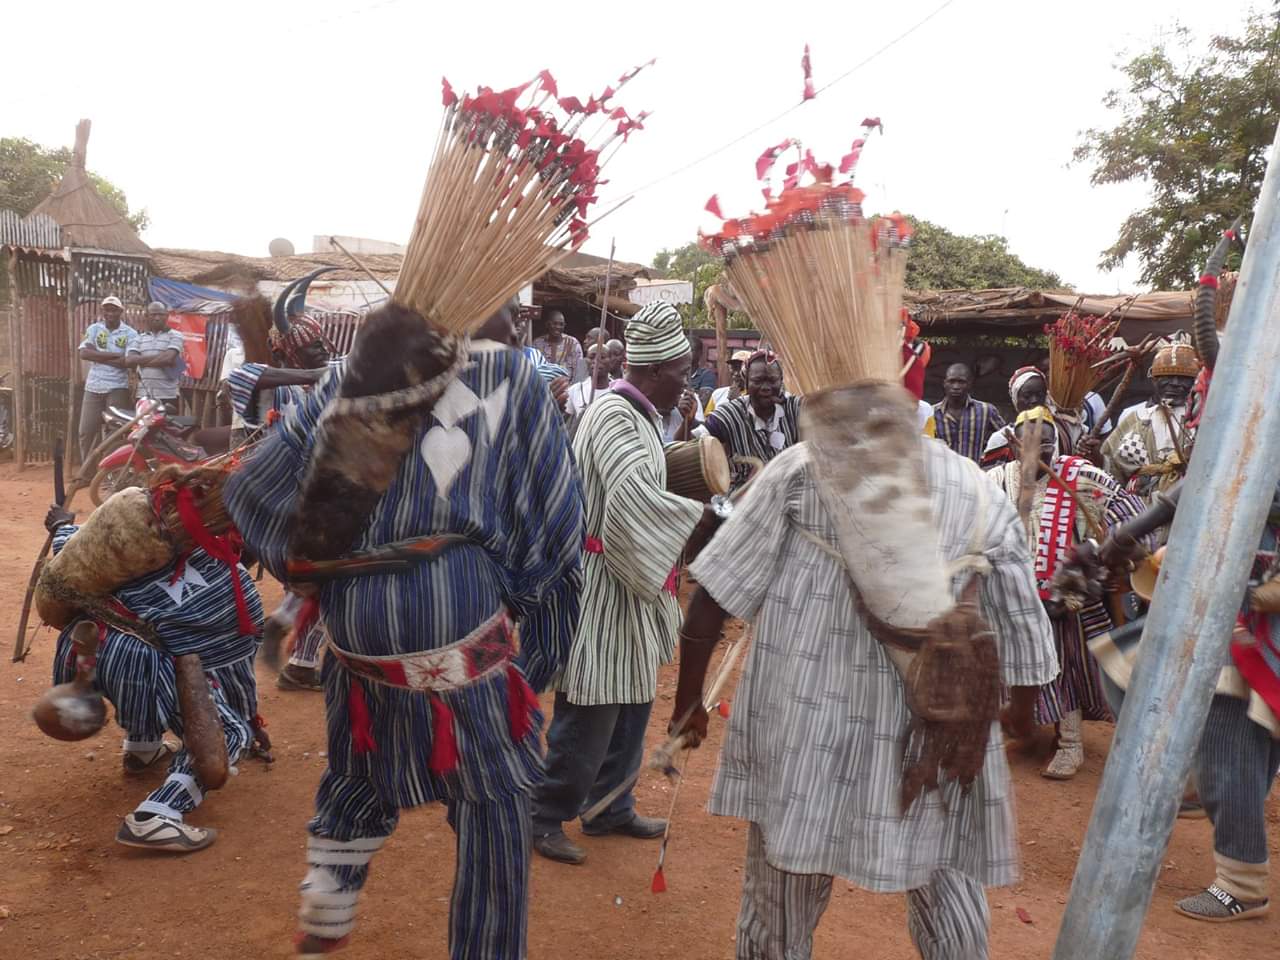  OUVERTURE DU FESTIVAL “DWI JORO”: Les ressortissants du Nahouri se retrouvent à Ouaga autour de leur culture.